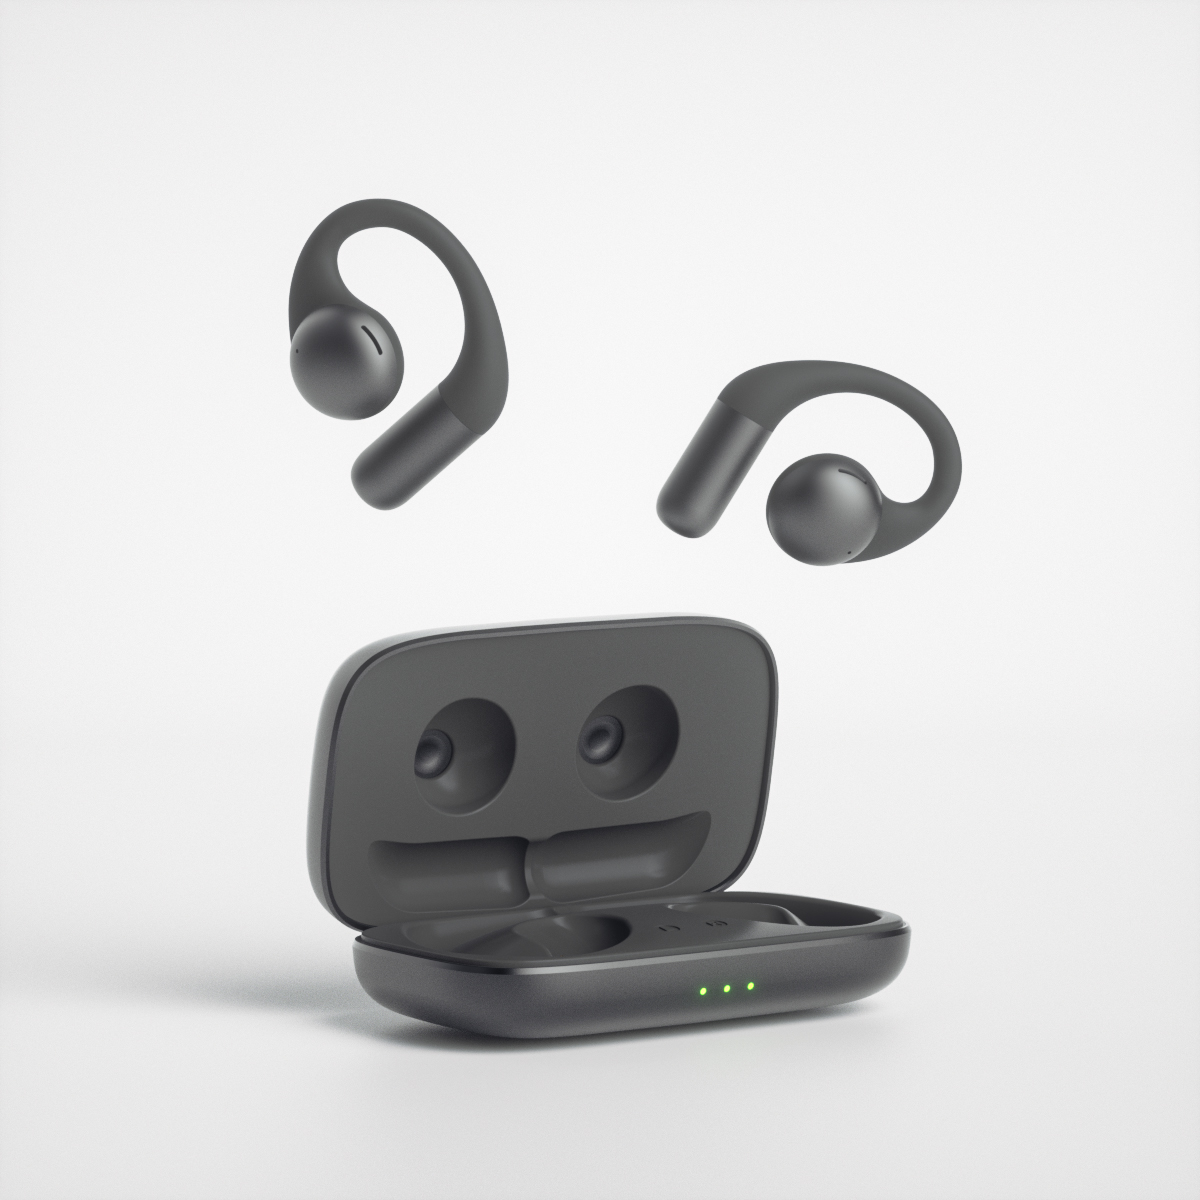 ผลิตภัณฑ์ใหม่ล่าสุด OWS ชุดหูฟังบลูทูธแบบเปิดหูสำหรับวิ่งแบบสปอร์ตไร้สายตัดเสียงรบกวน 